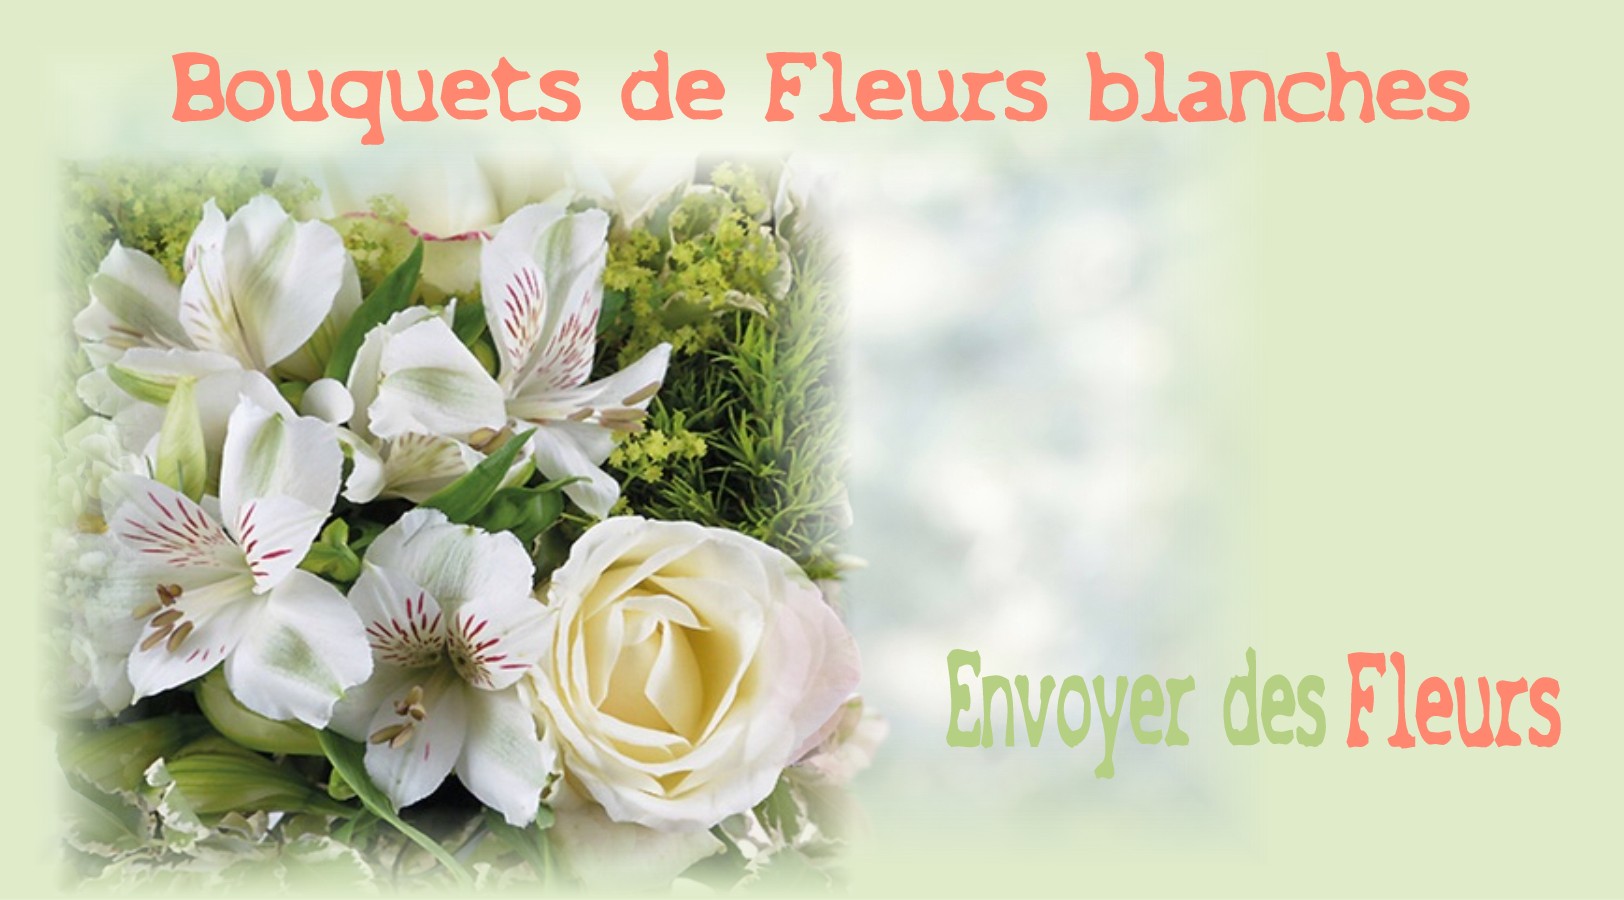 BOUQUETS DE FLEURS BLANCHES -FLEURISTE MONTPELLIER (34) - ENVOYER DES FLEURS